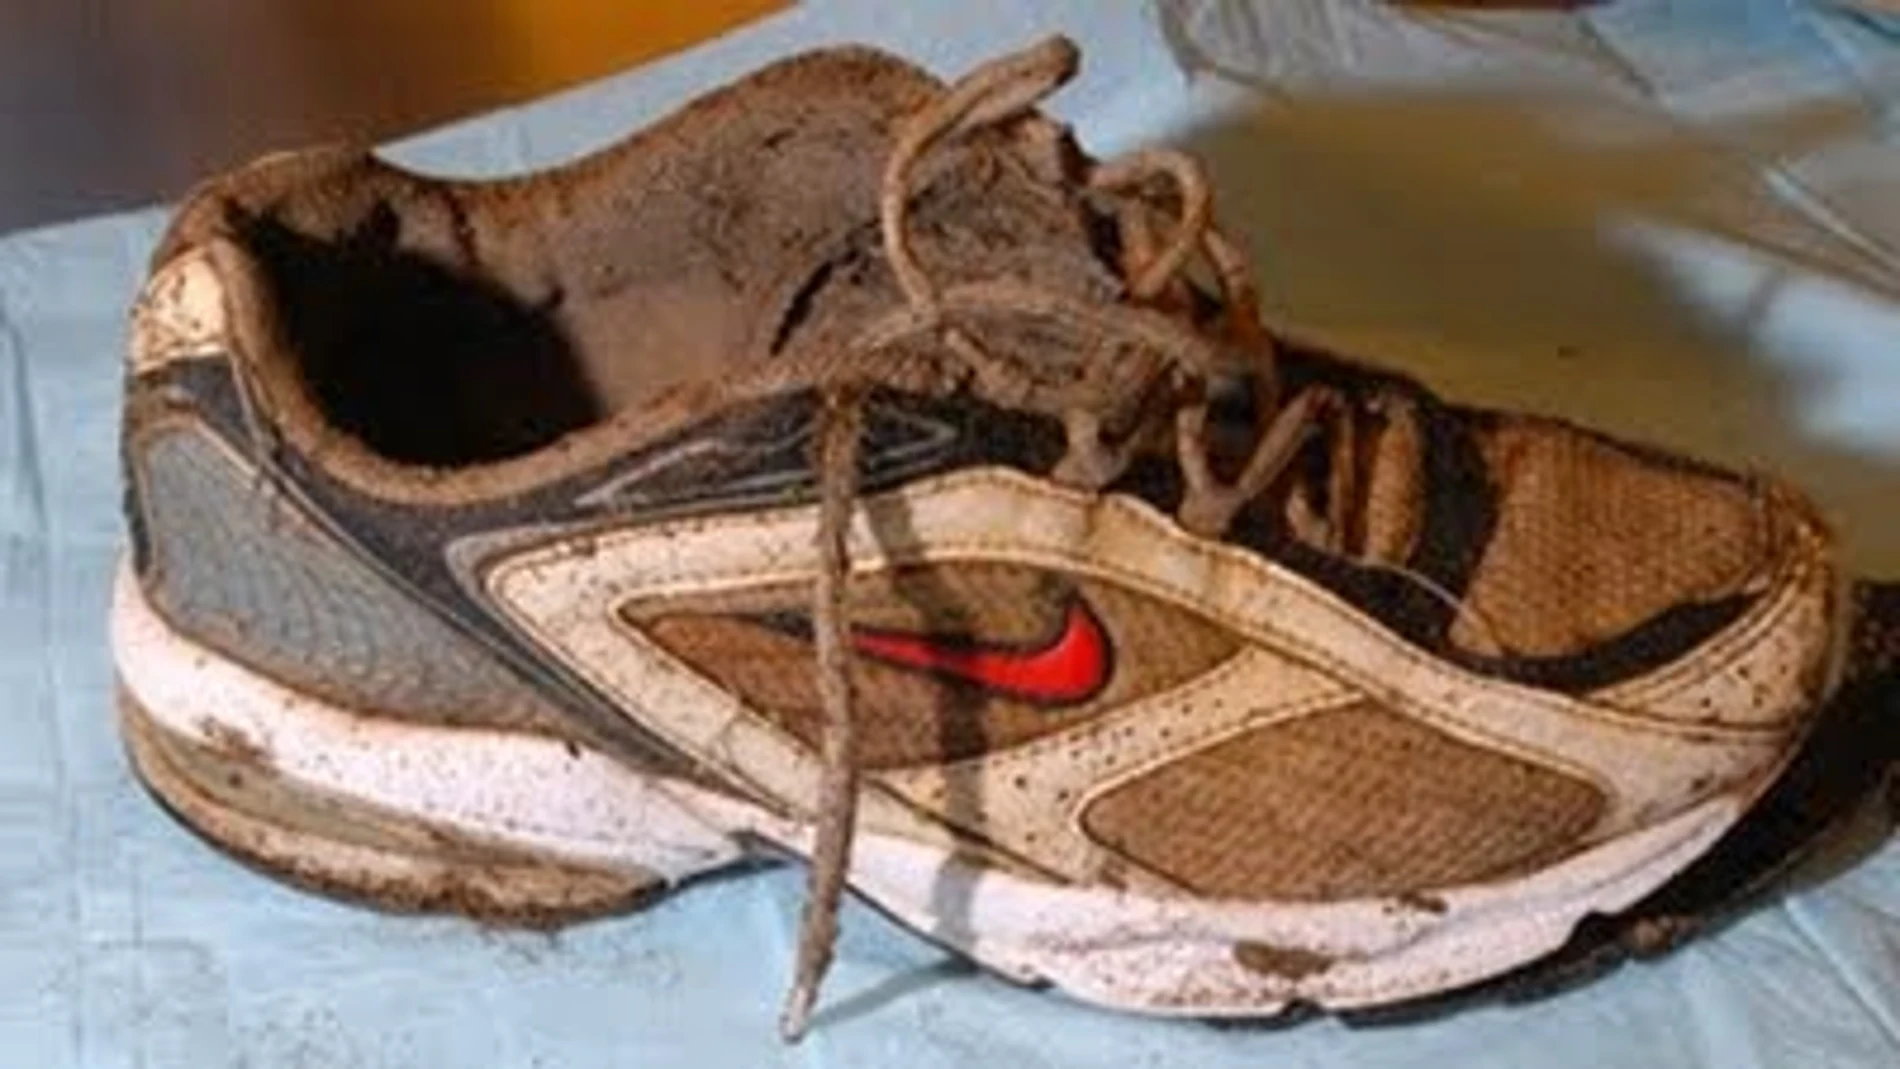 Imagen de una de las zapatillas encontradas con restos óseos de un pie en su interior